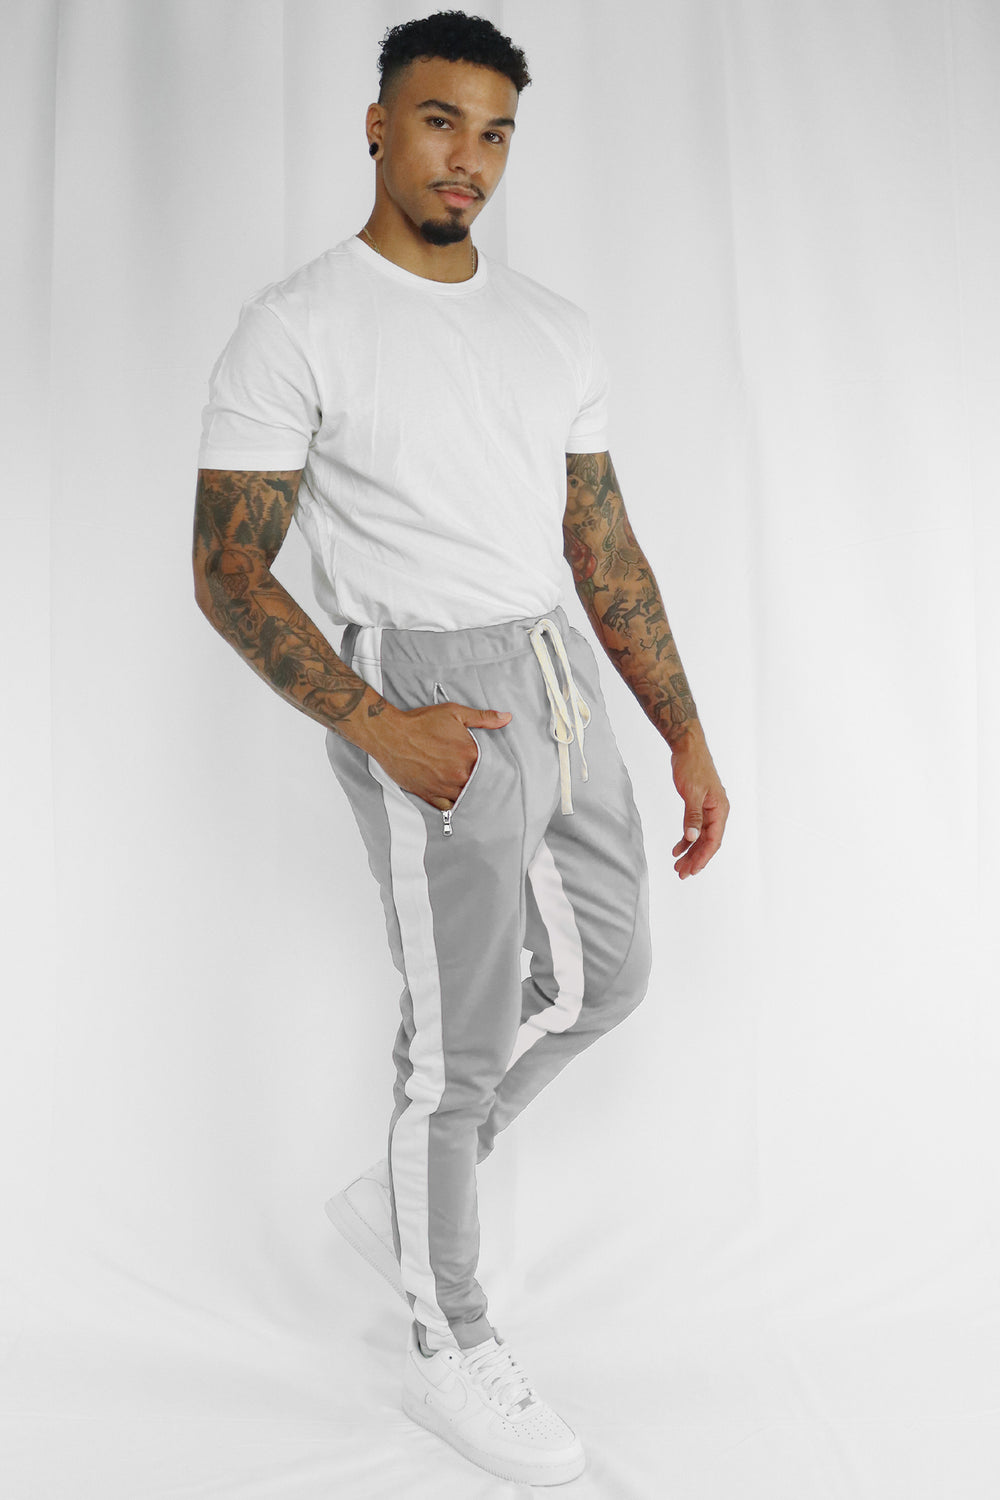 Zip Pocket Dual Stripe Track Pants (Grey-White) - Zamage